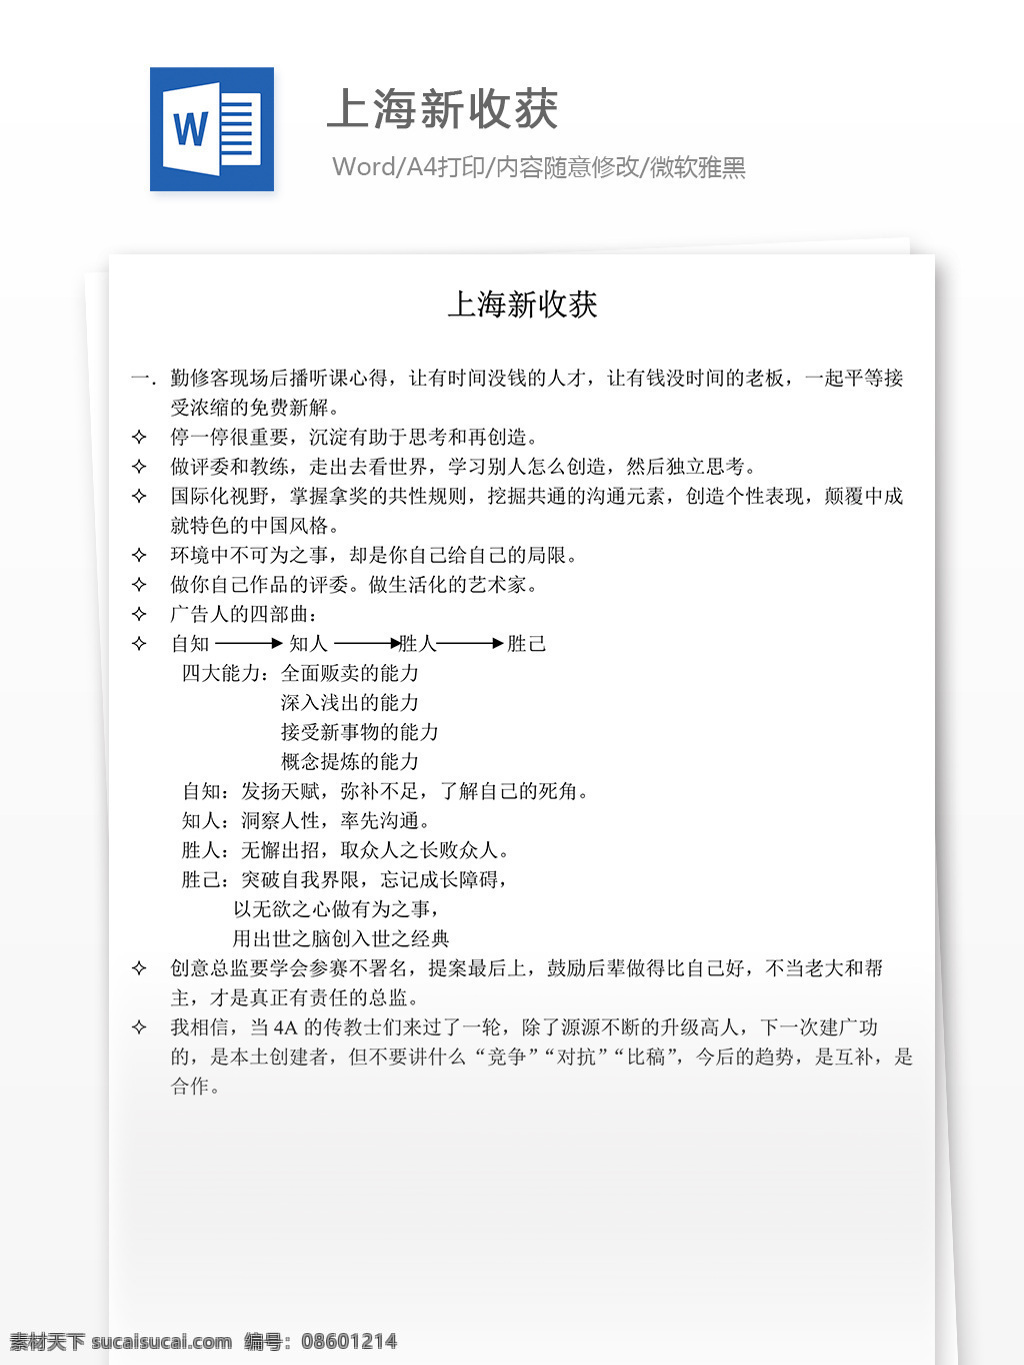 文档 world 文档模板 广告 文案 策划 广告策划 报告 媒体上海 上海策划 上海新收获 新收获